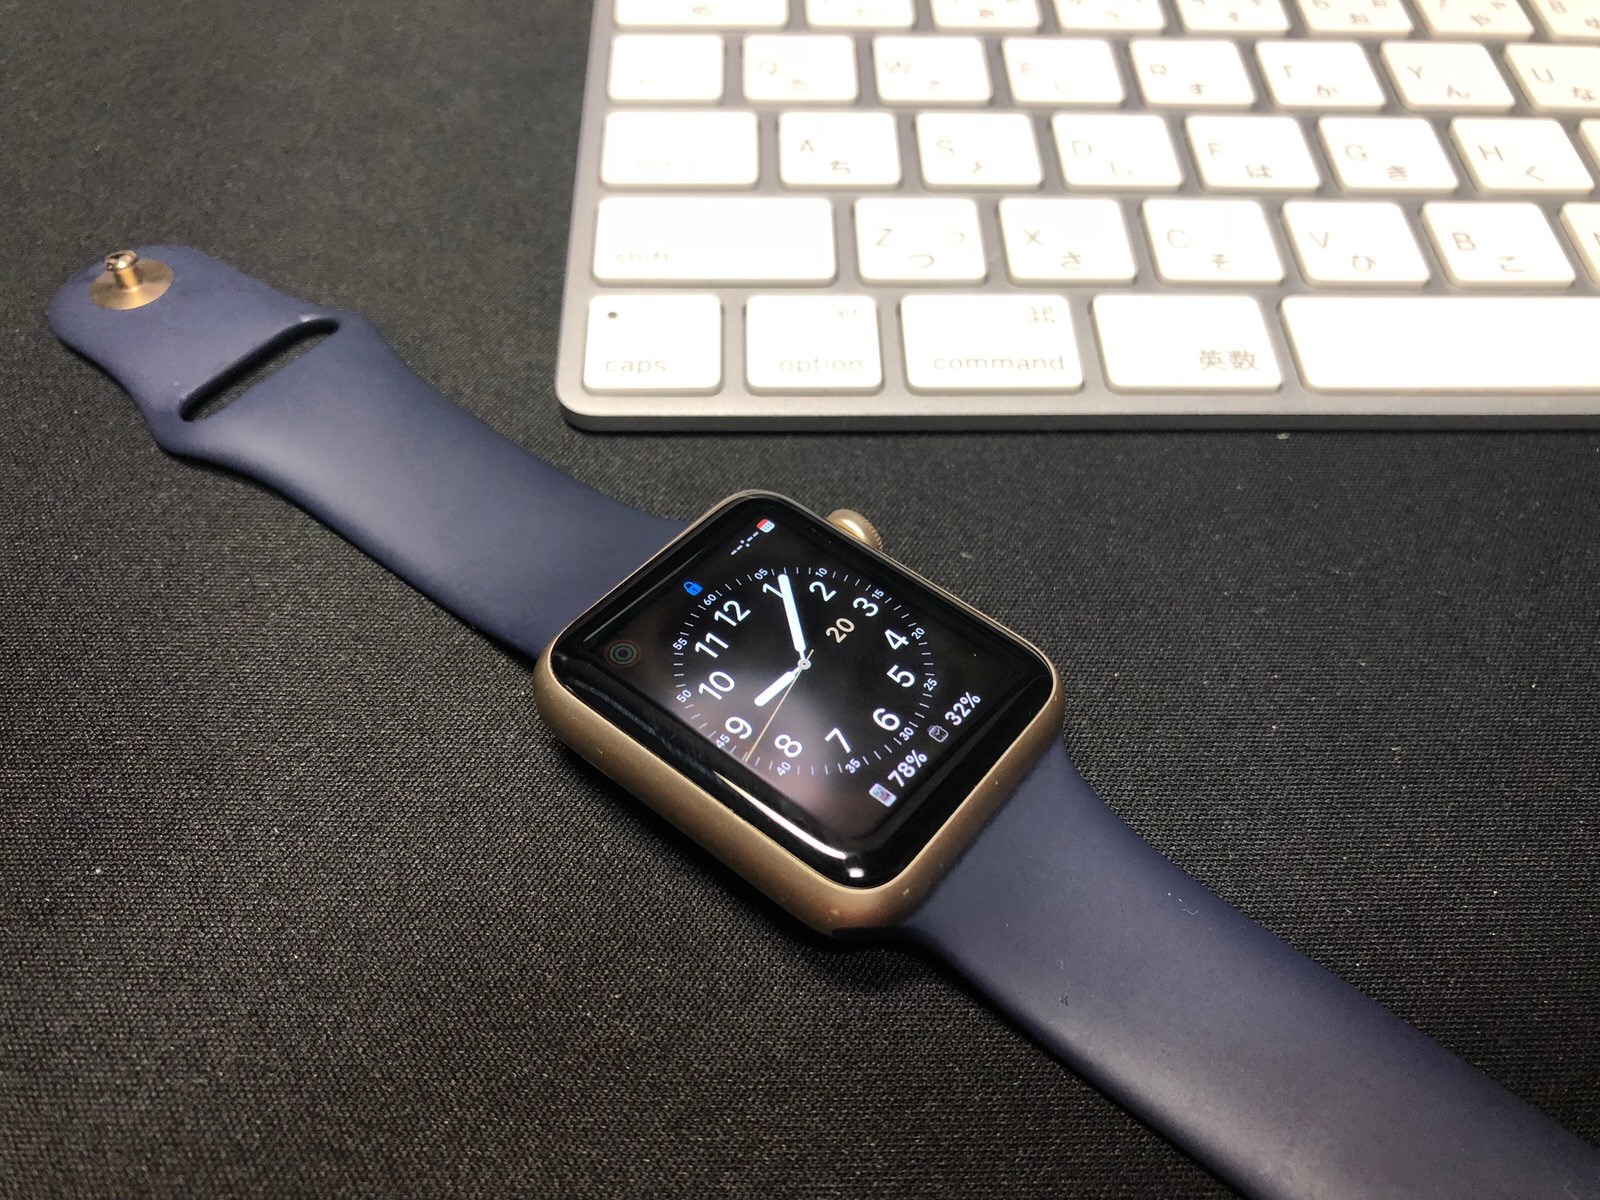 [Apple Watch]新型 Apple Watch Series 4 が届いたので早速開封してみたよ